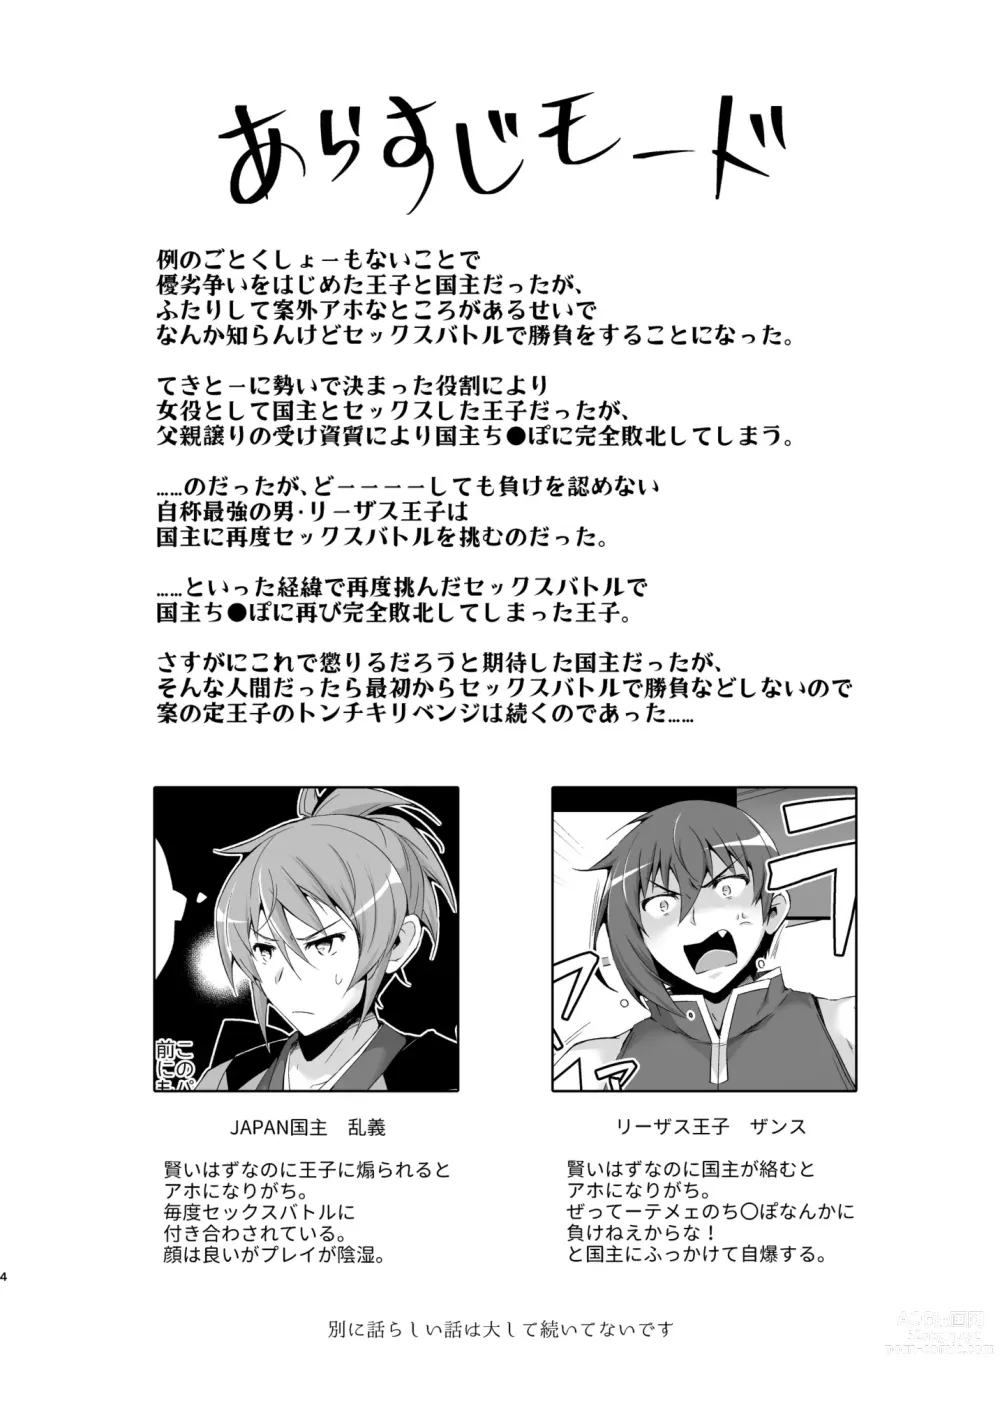 Page 4 of doujinshi Korinai Leazas Ouji no Erohon